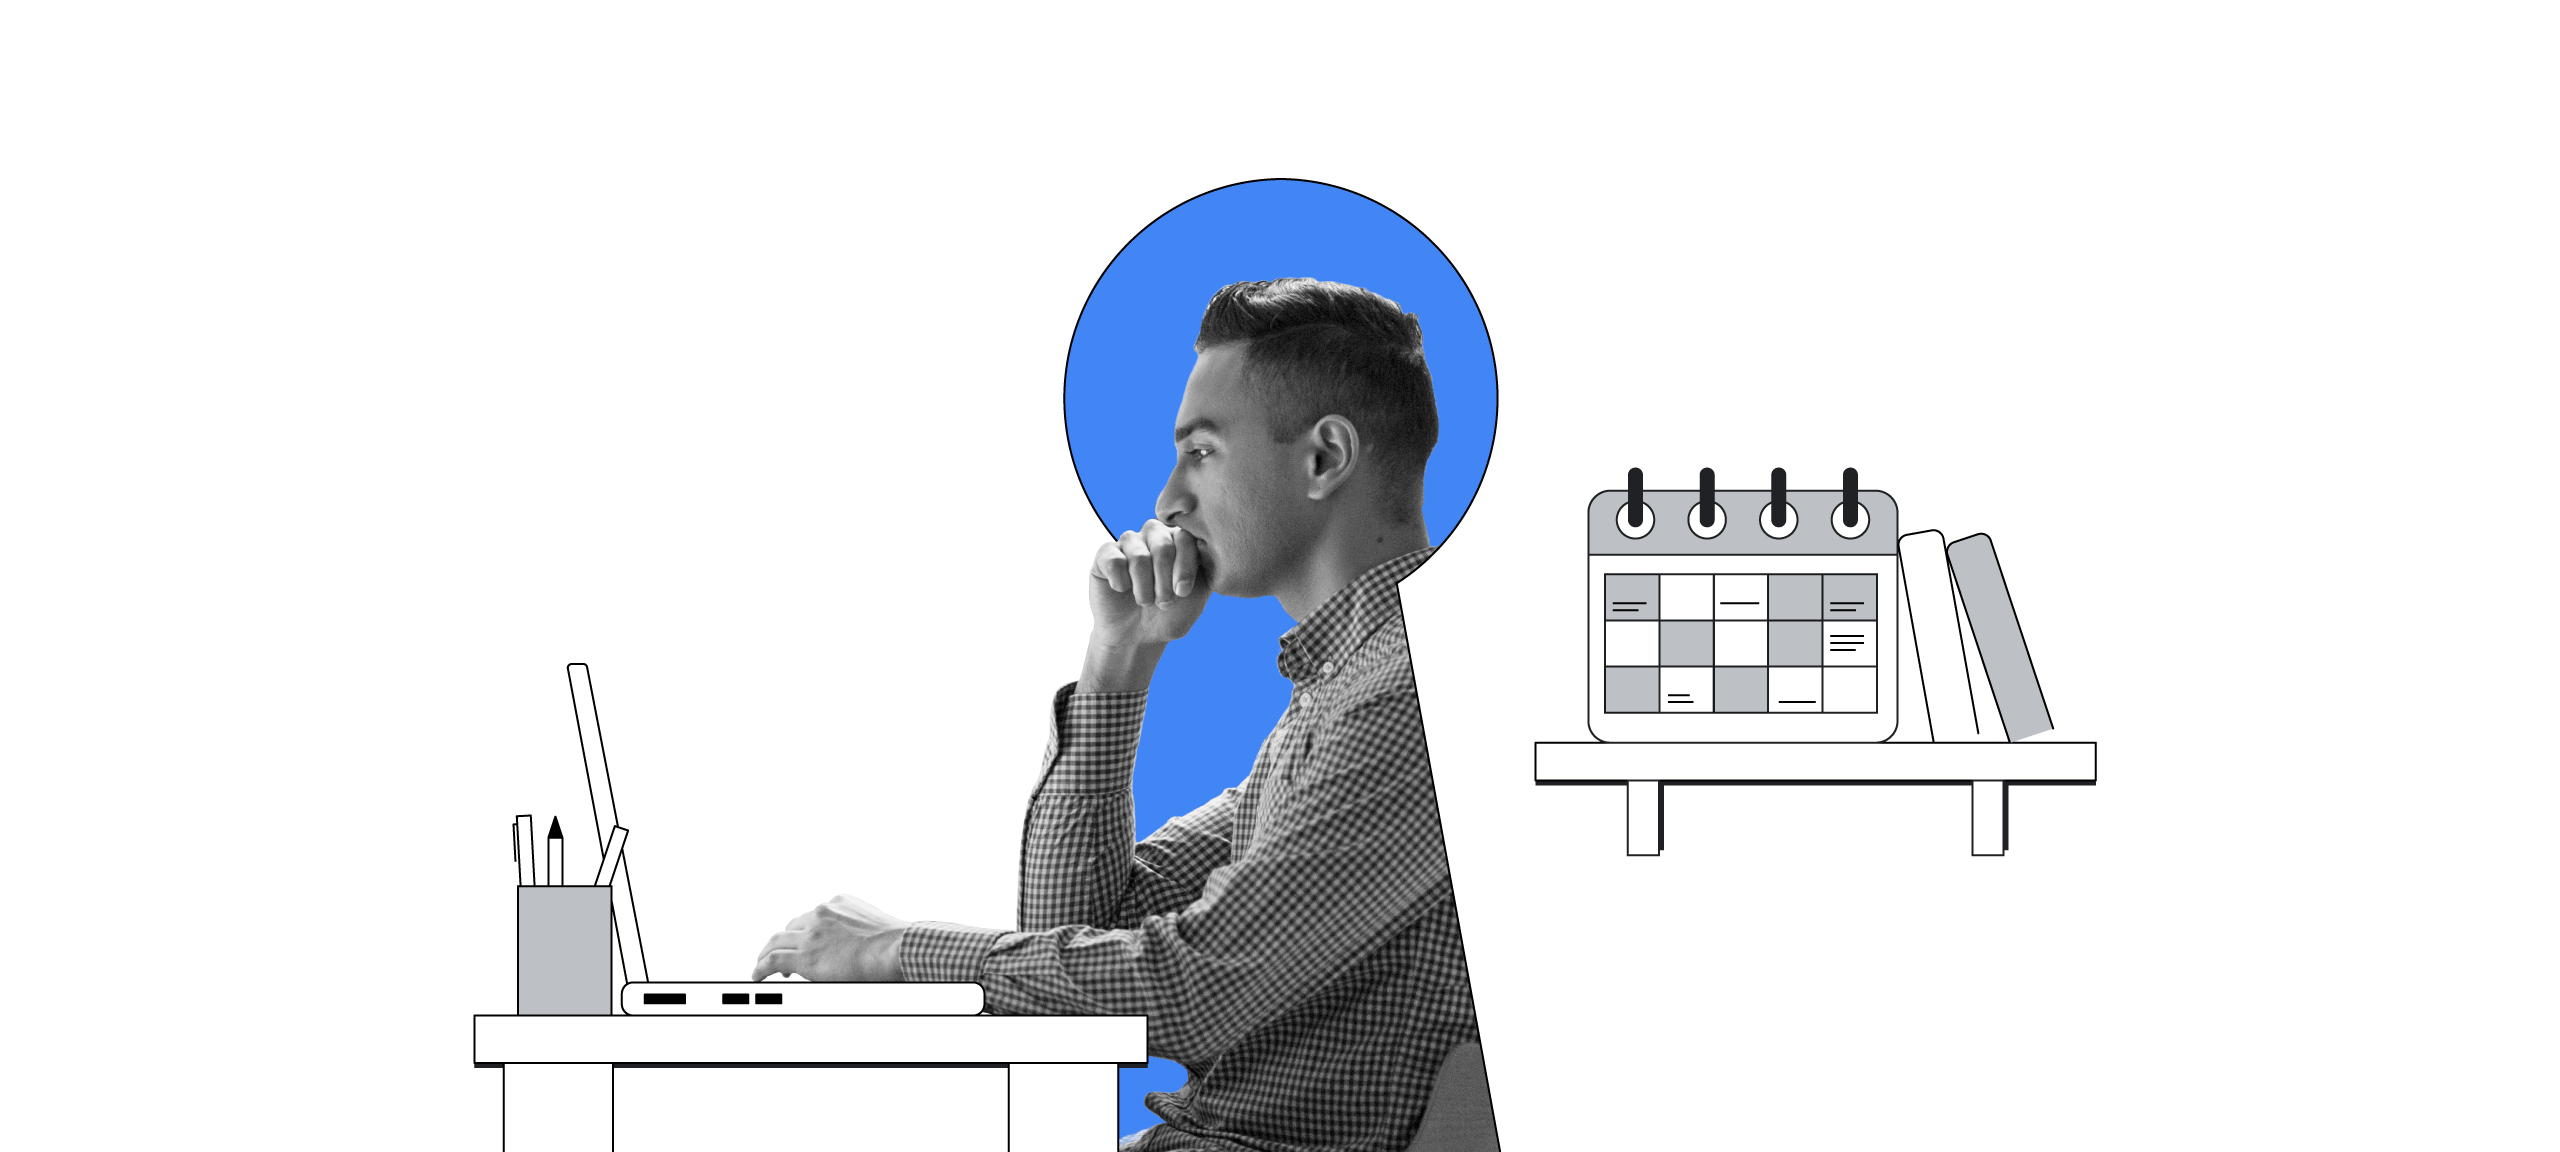 Un homme portant une chemise à carreaux est assis à un bureau, face à un ordinateur portable. Un trou de serrure bleu est superposé. Derrière l'homme se trouve une étagère sur laquelle sont posés un calendrier et des livres.